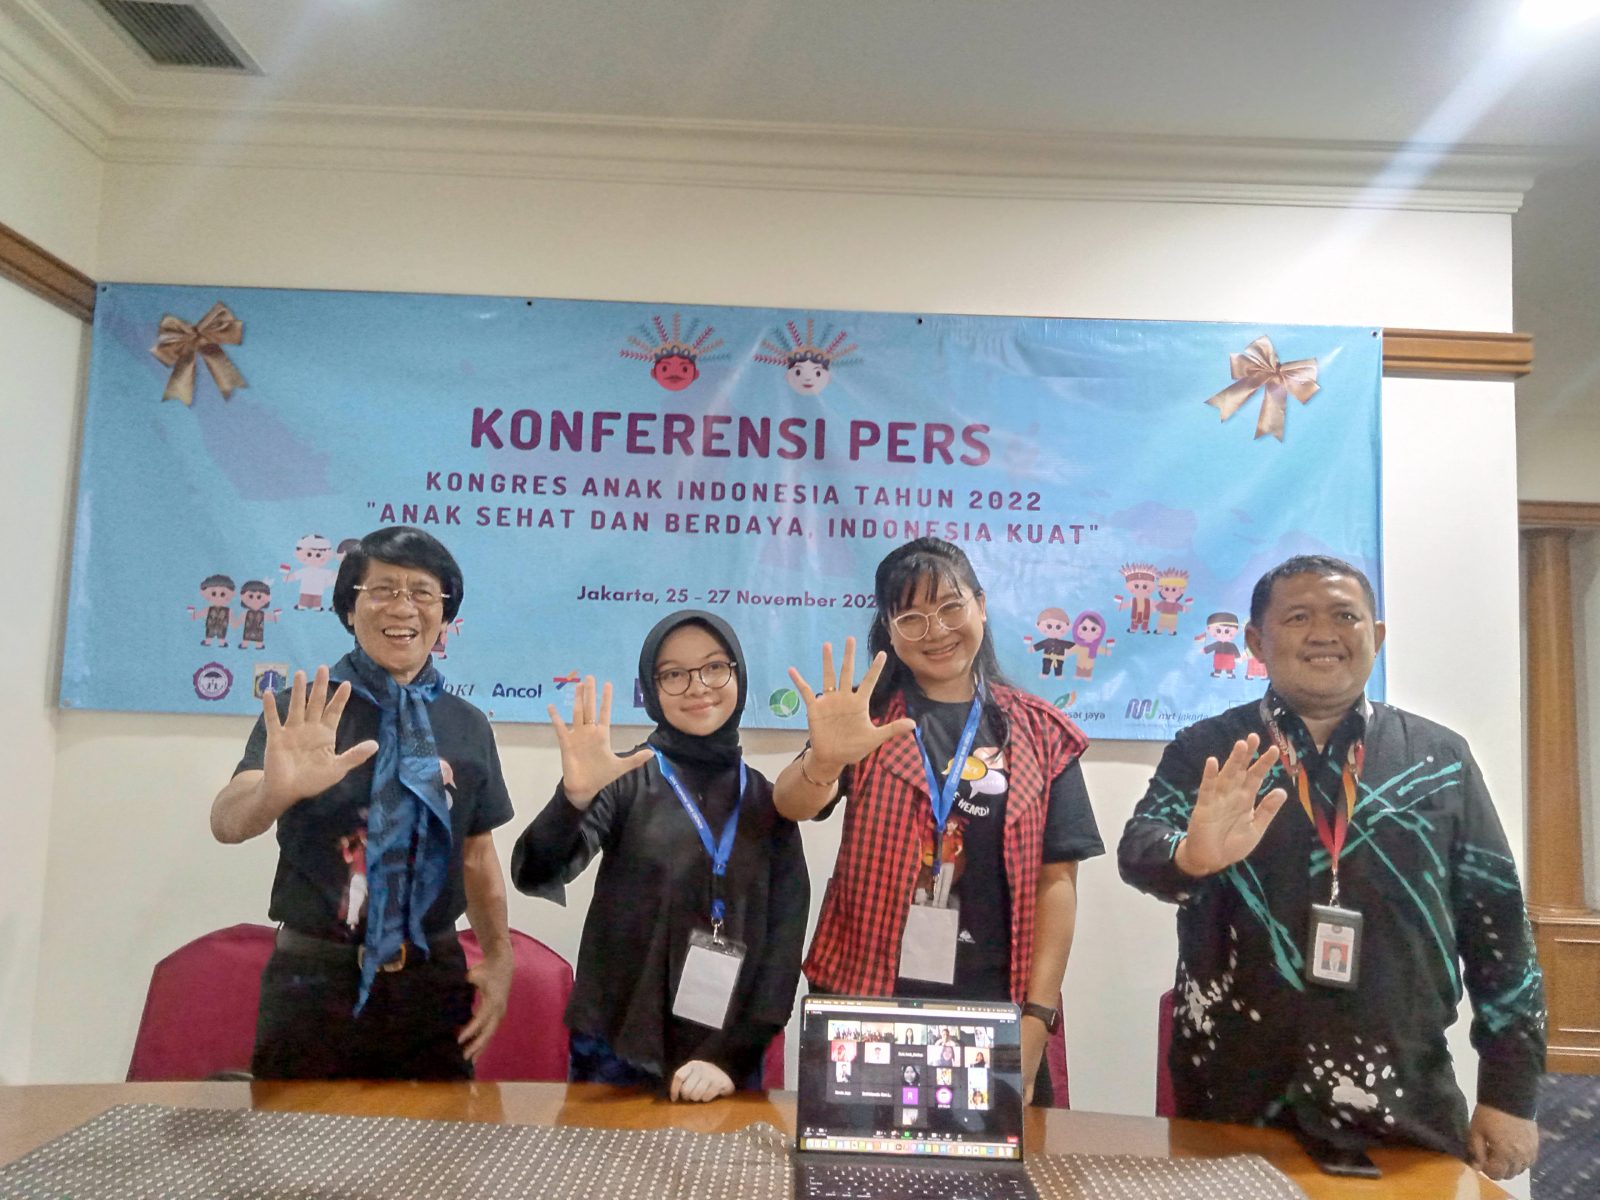 Kongres Anak Indonesia" Anak Sehat Dan Berdaya Indonesia Kuat "